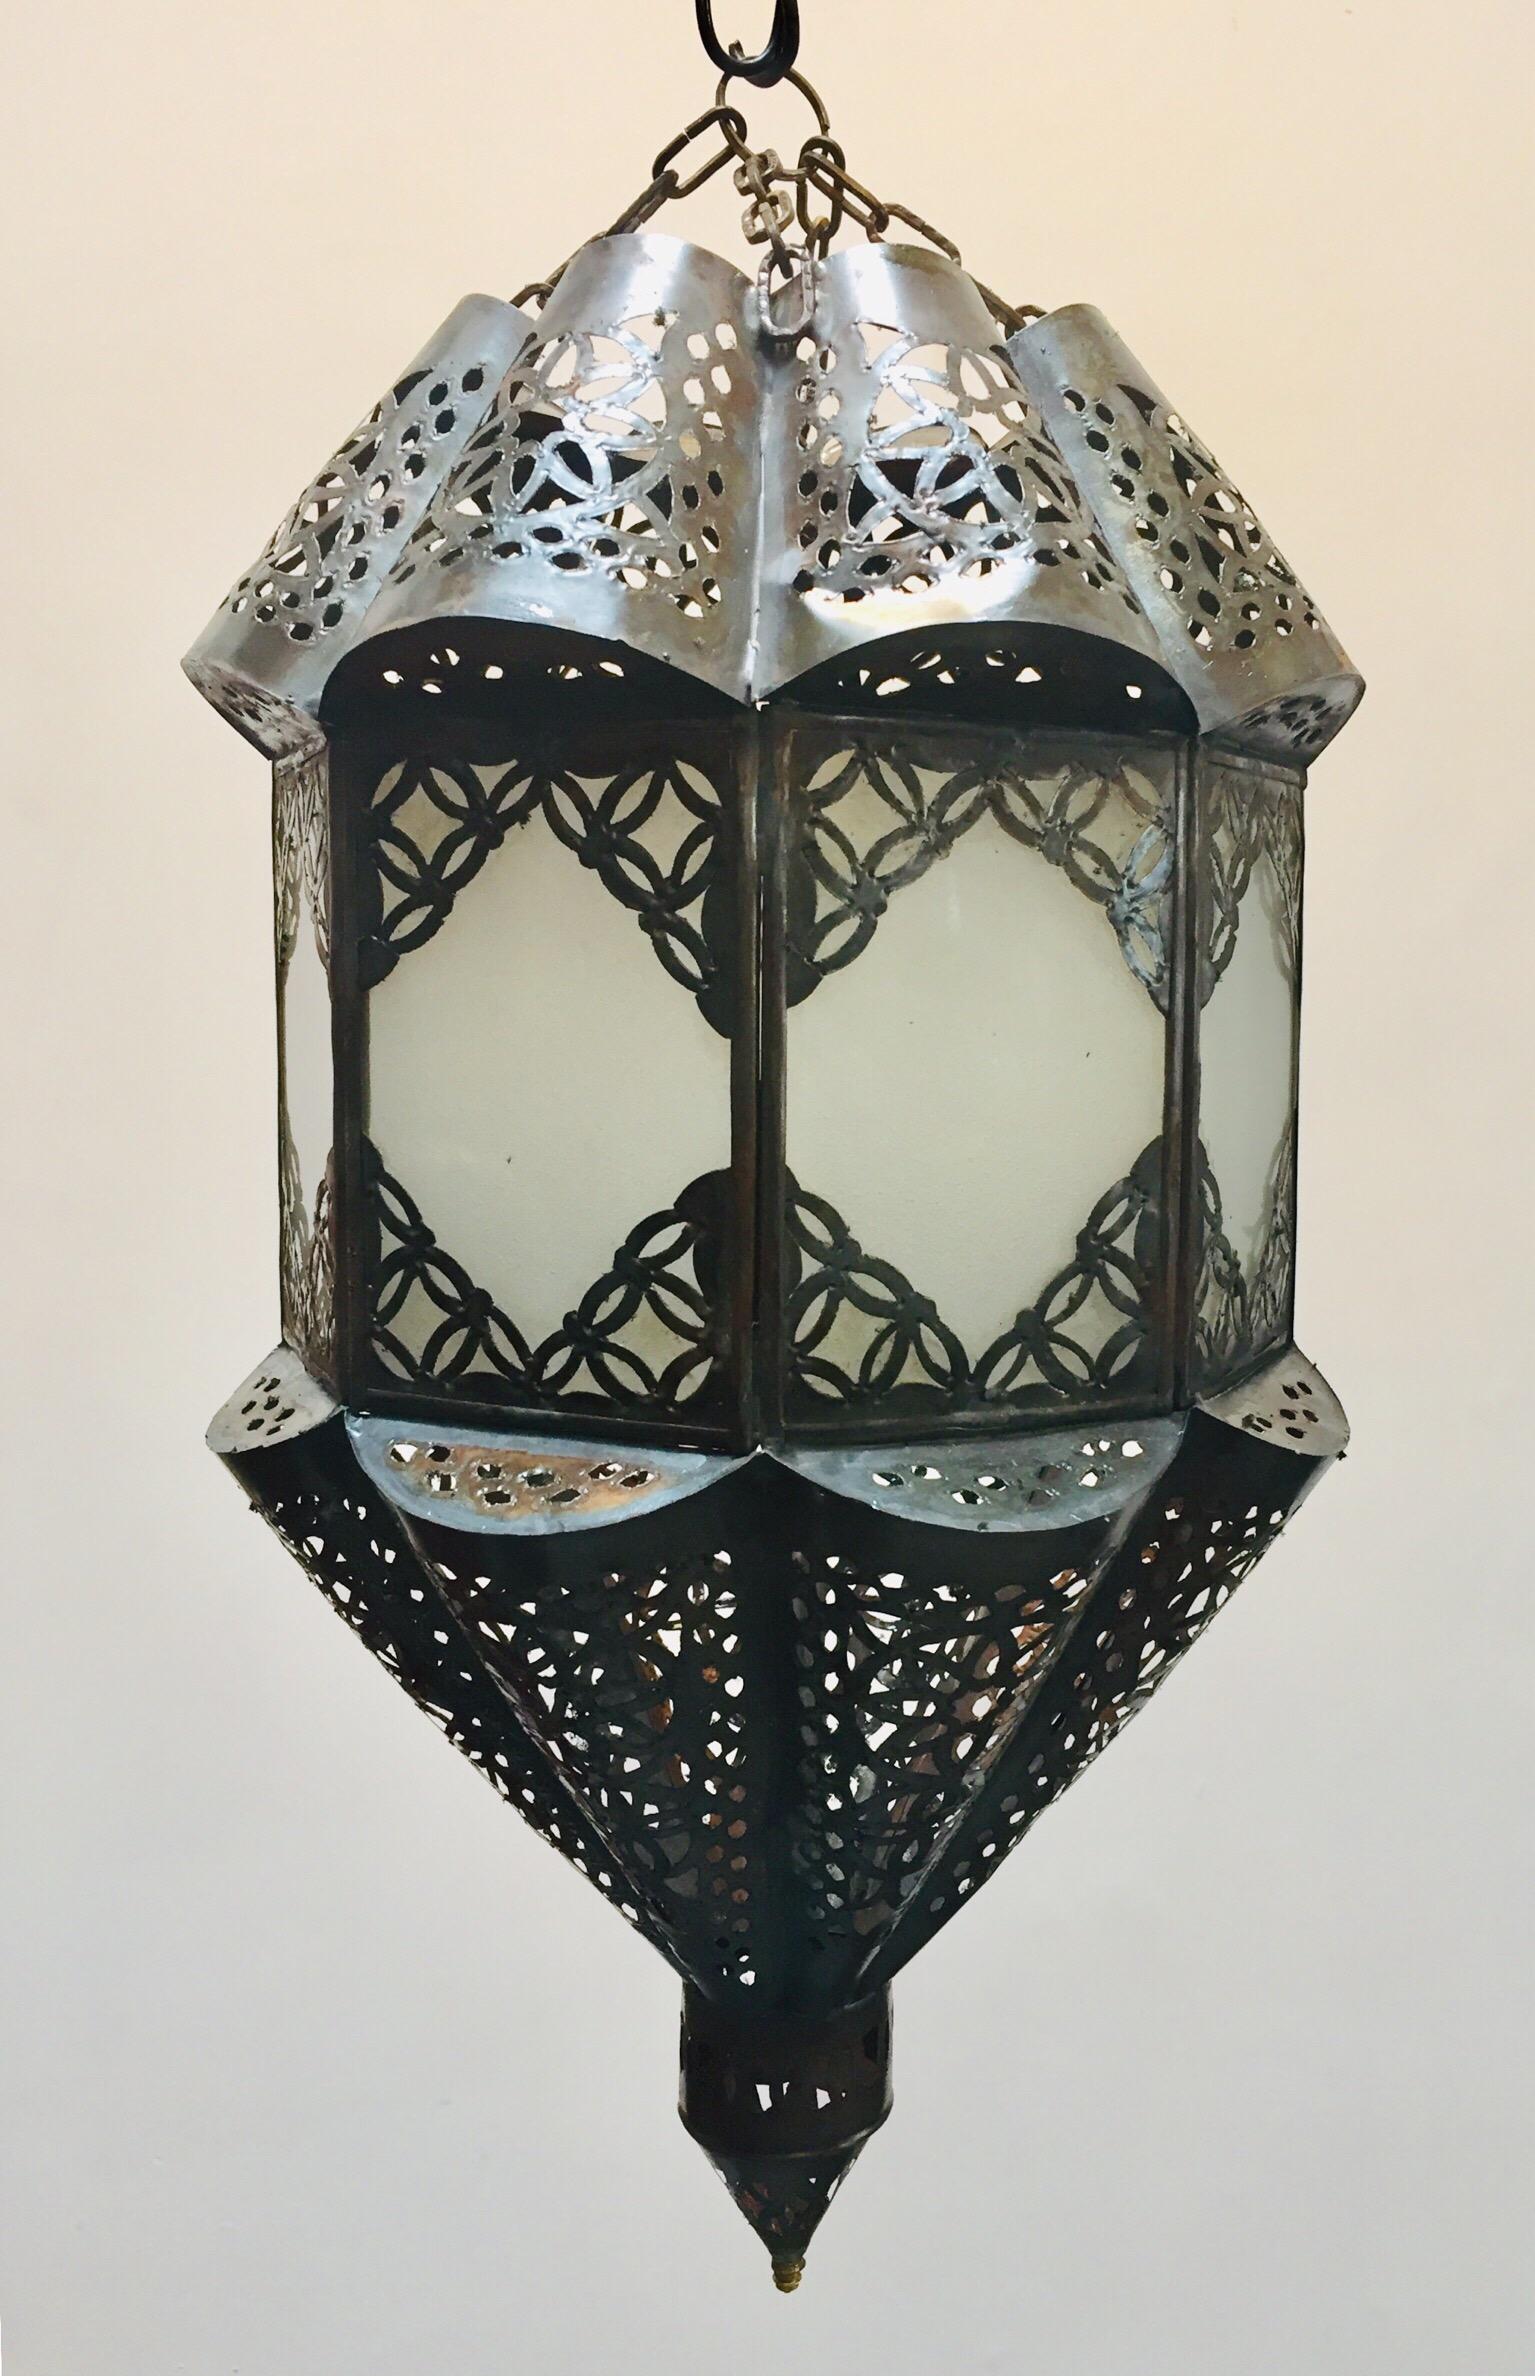 Élégante lanterne marocaine fabriquée à la main avec un verre laiteux dépoli.
Fabriqué à la main avec du petit verre taillé et des motifs mauresques en métal filigrané.
Plusieurs disponibles. Non raccordé à l'électricité, ombrage